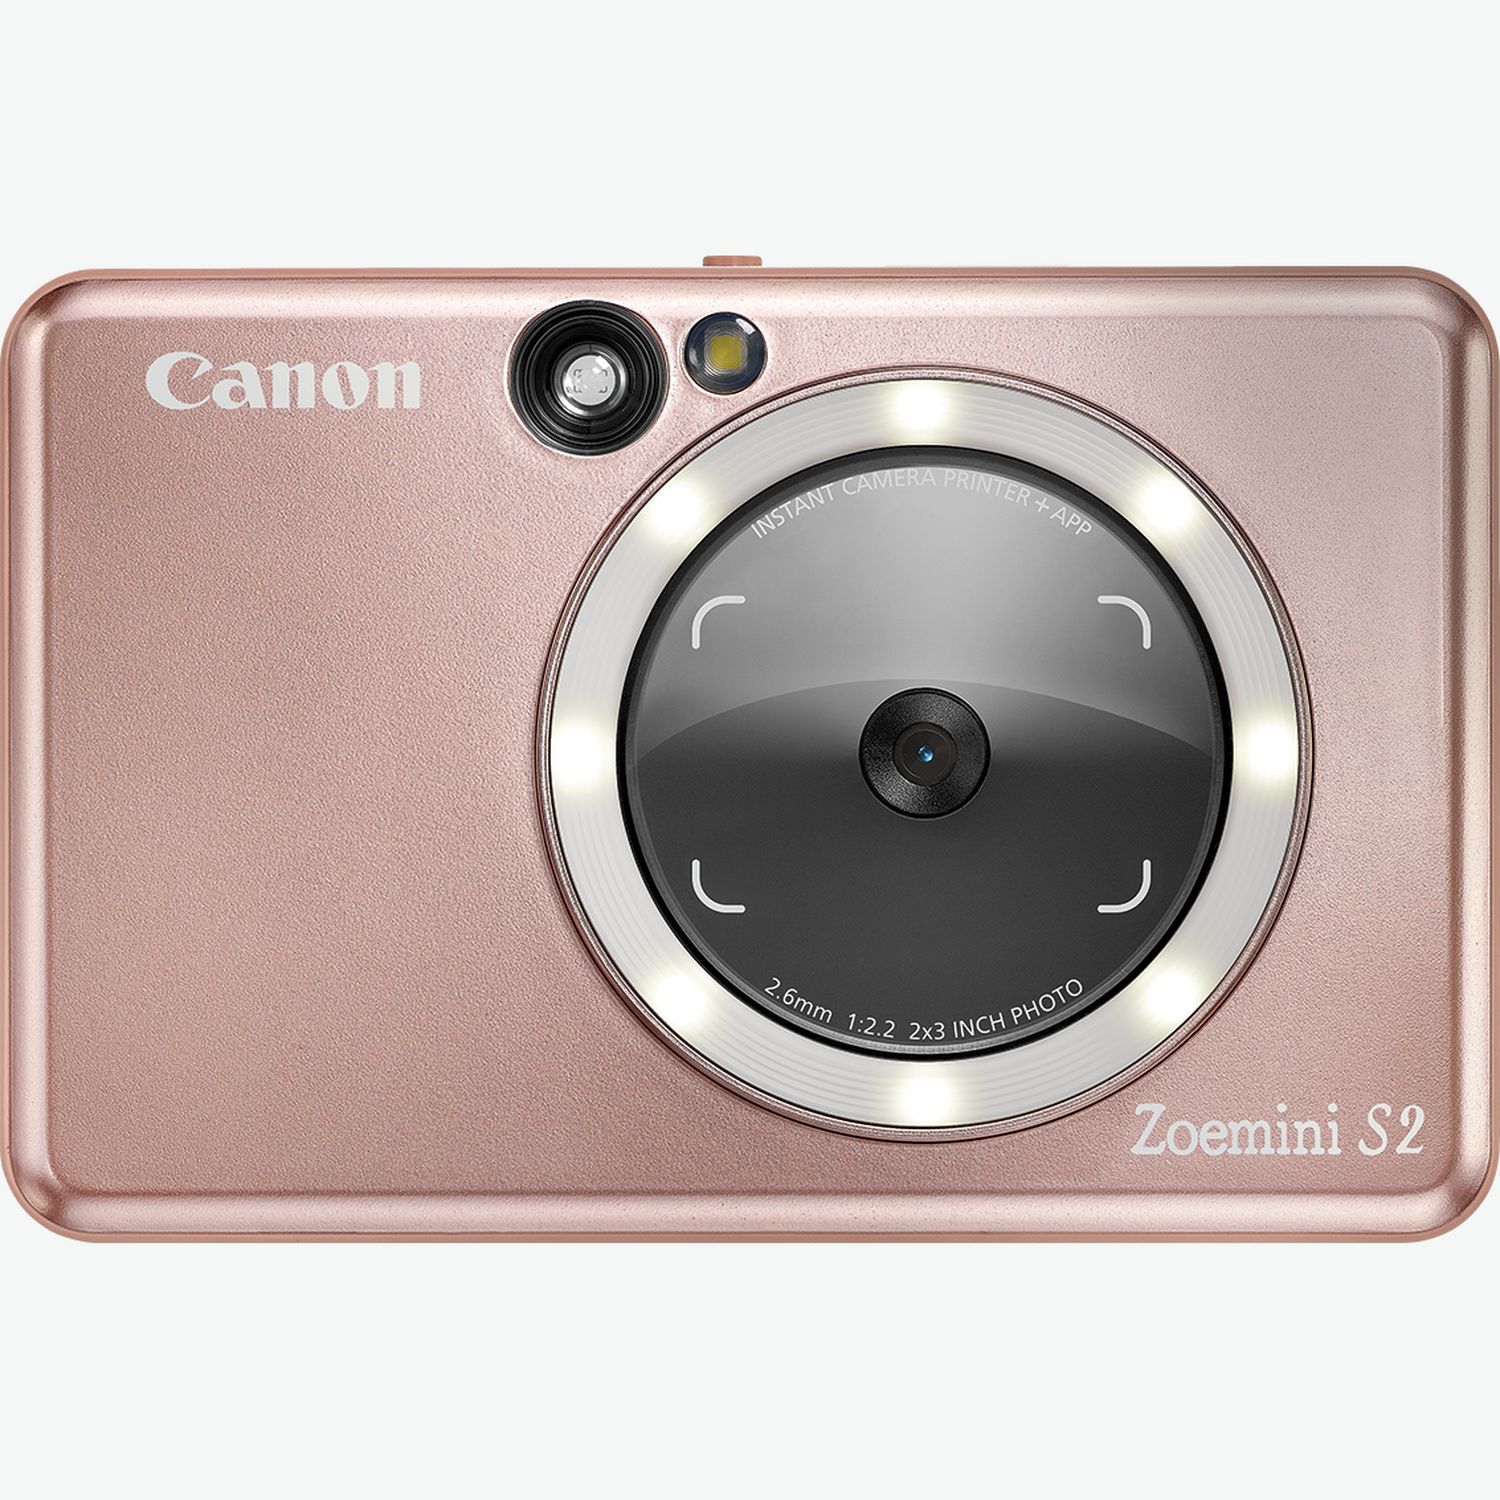 Test Canon Zoemini C : un appareil instantané à glisser partout - Les  Numériques